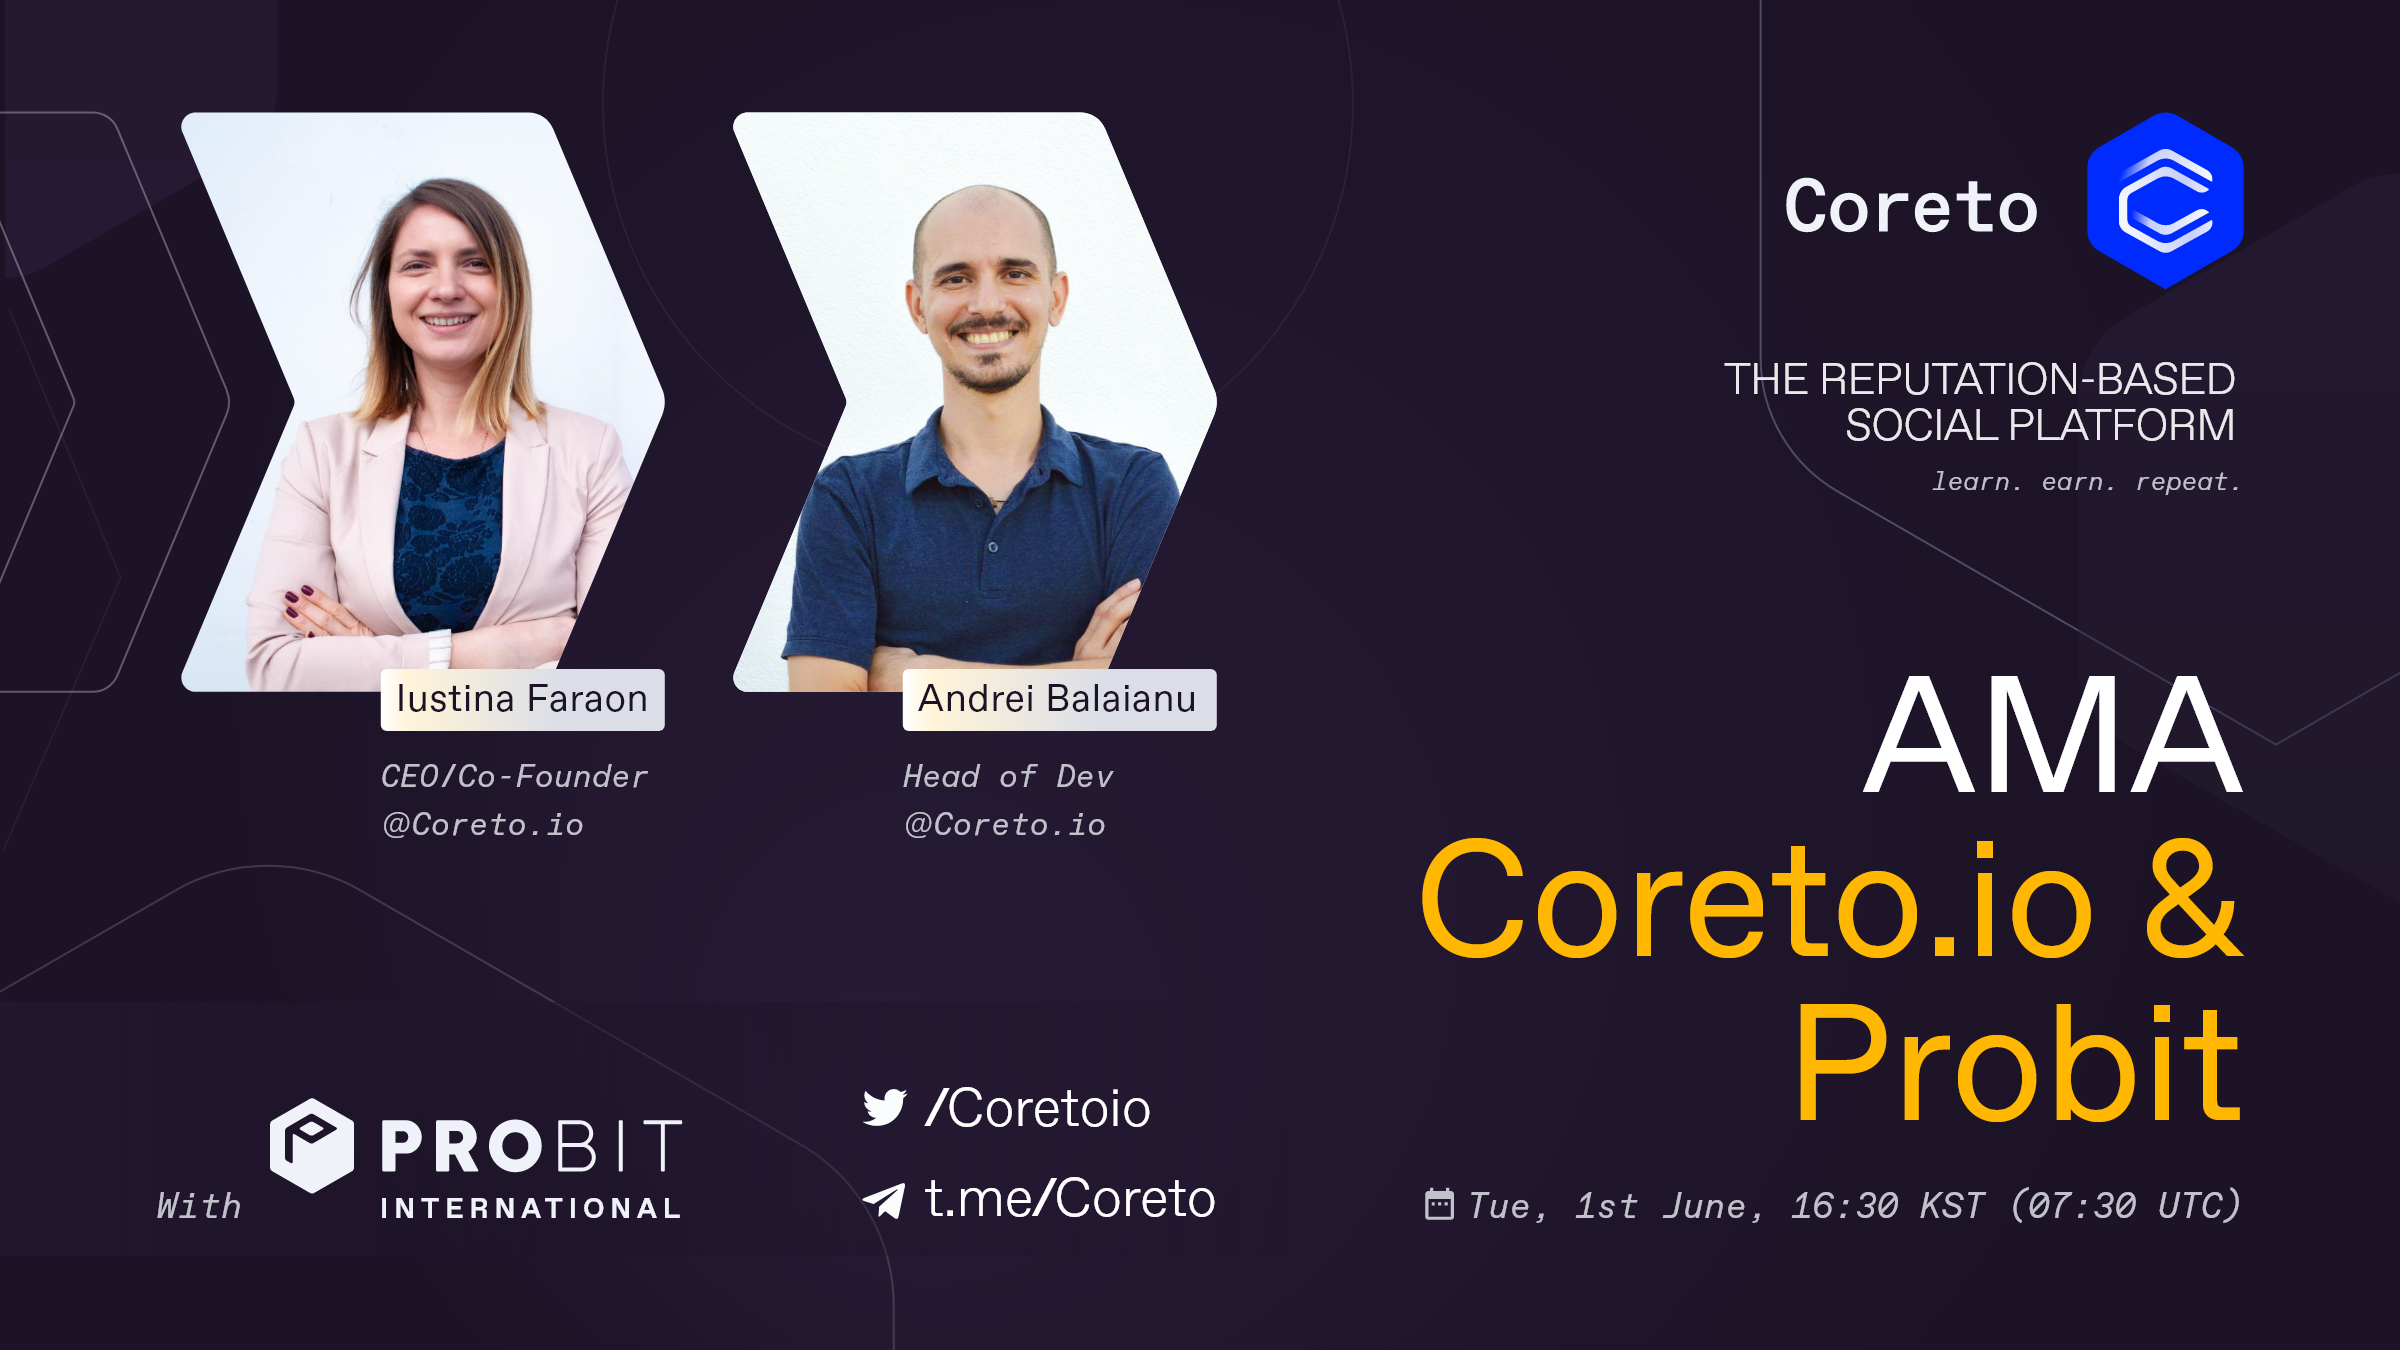 ProBit x Coreto Telegram AMA Session Win 51,000 COR tokens ...